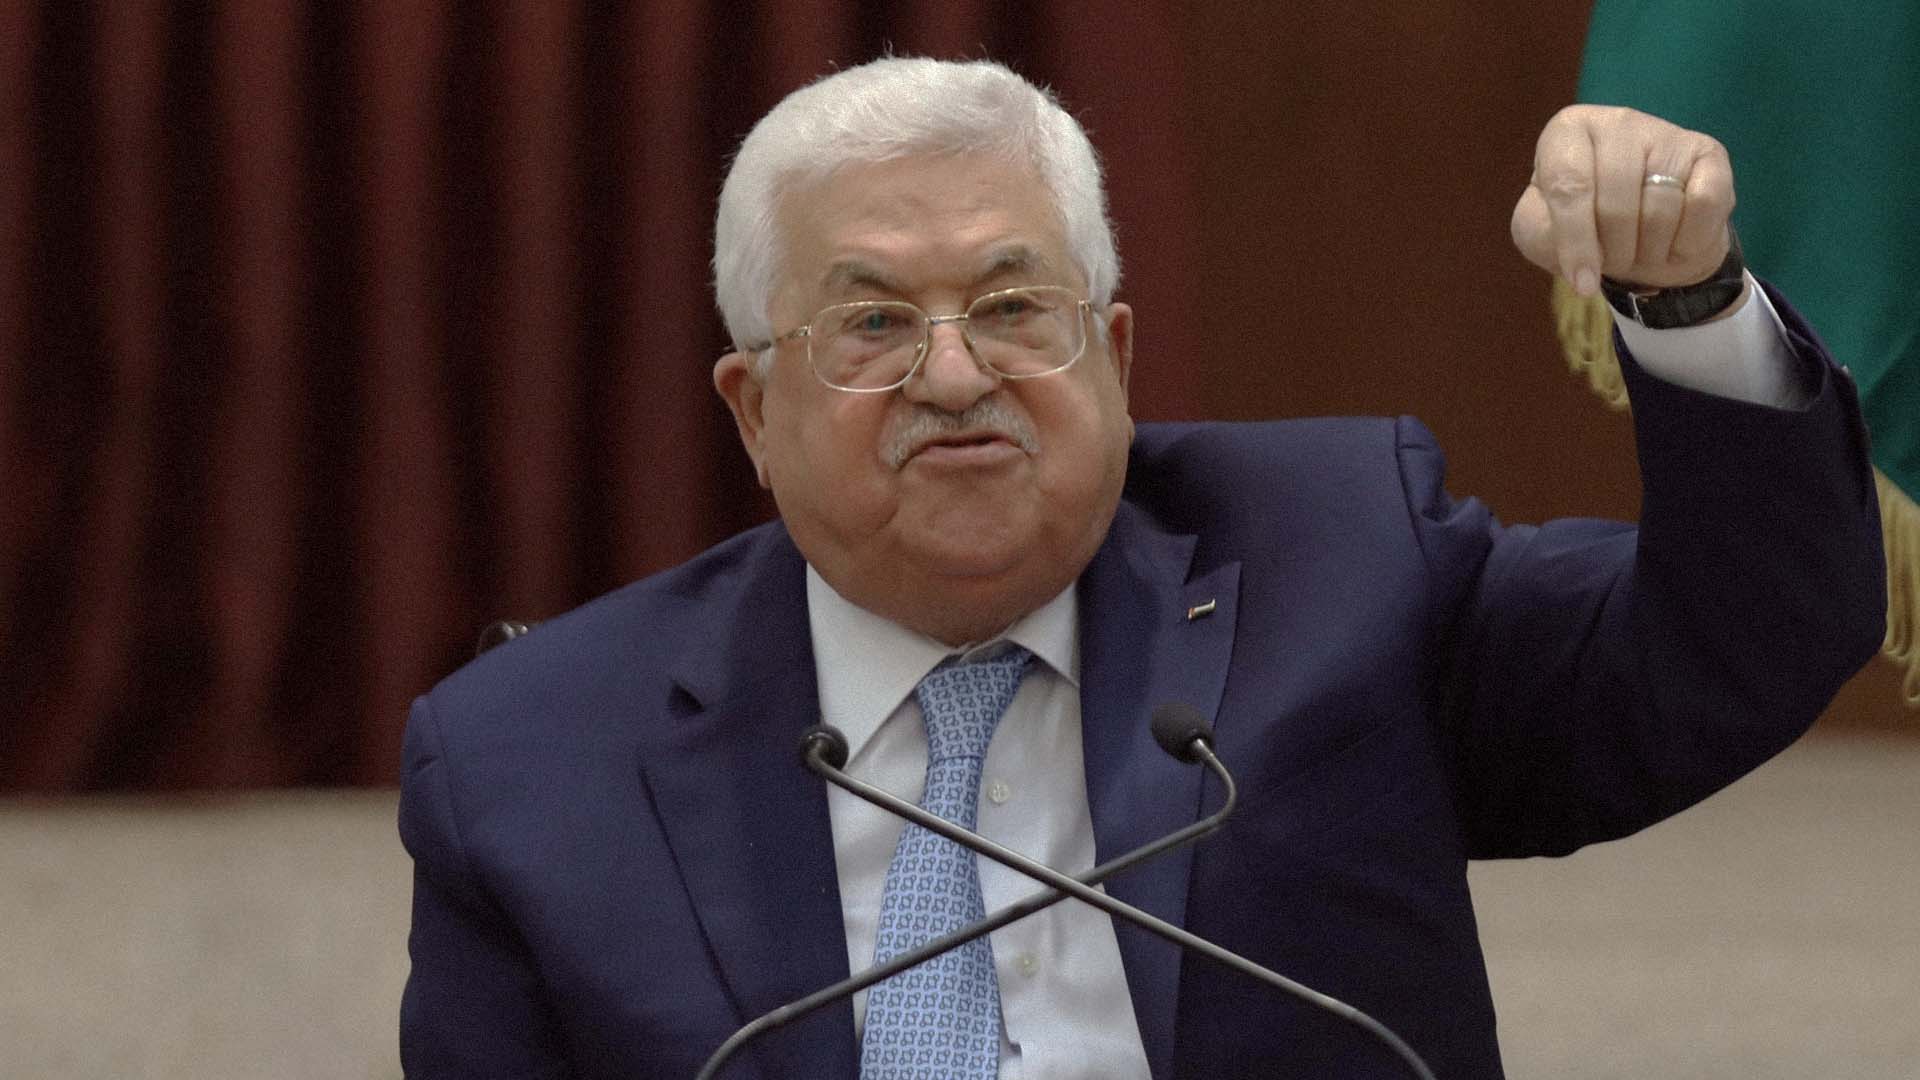 صورة محمود عباس يؤكد تمسّكه بوقف التنسيق الأمني إلا إذا انصاع الإسرائيليون لرغبته وأمروه بإعادته